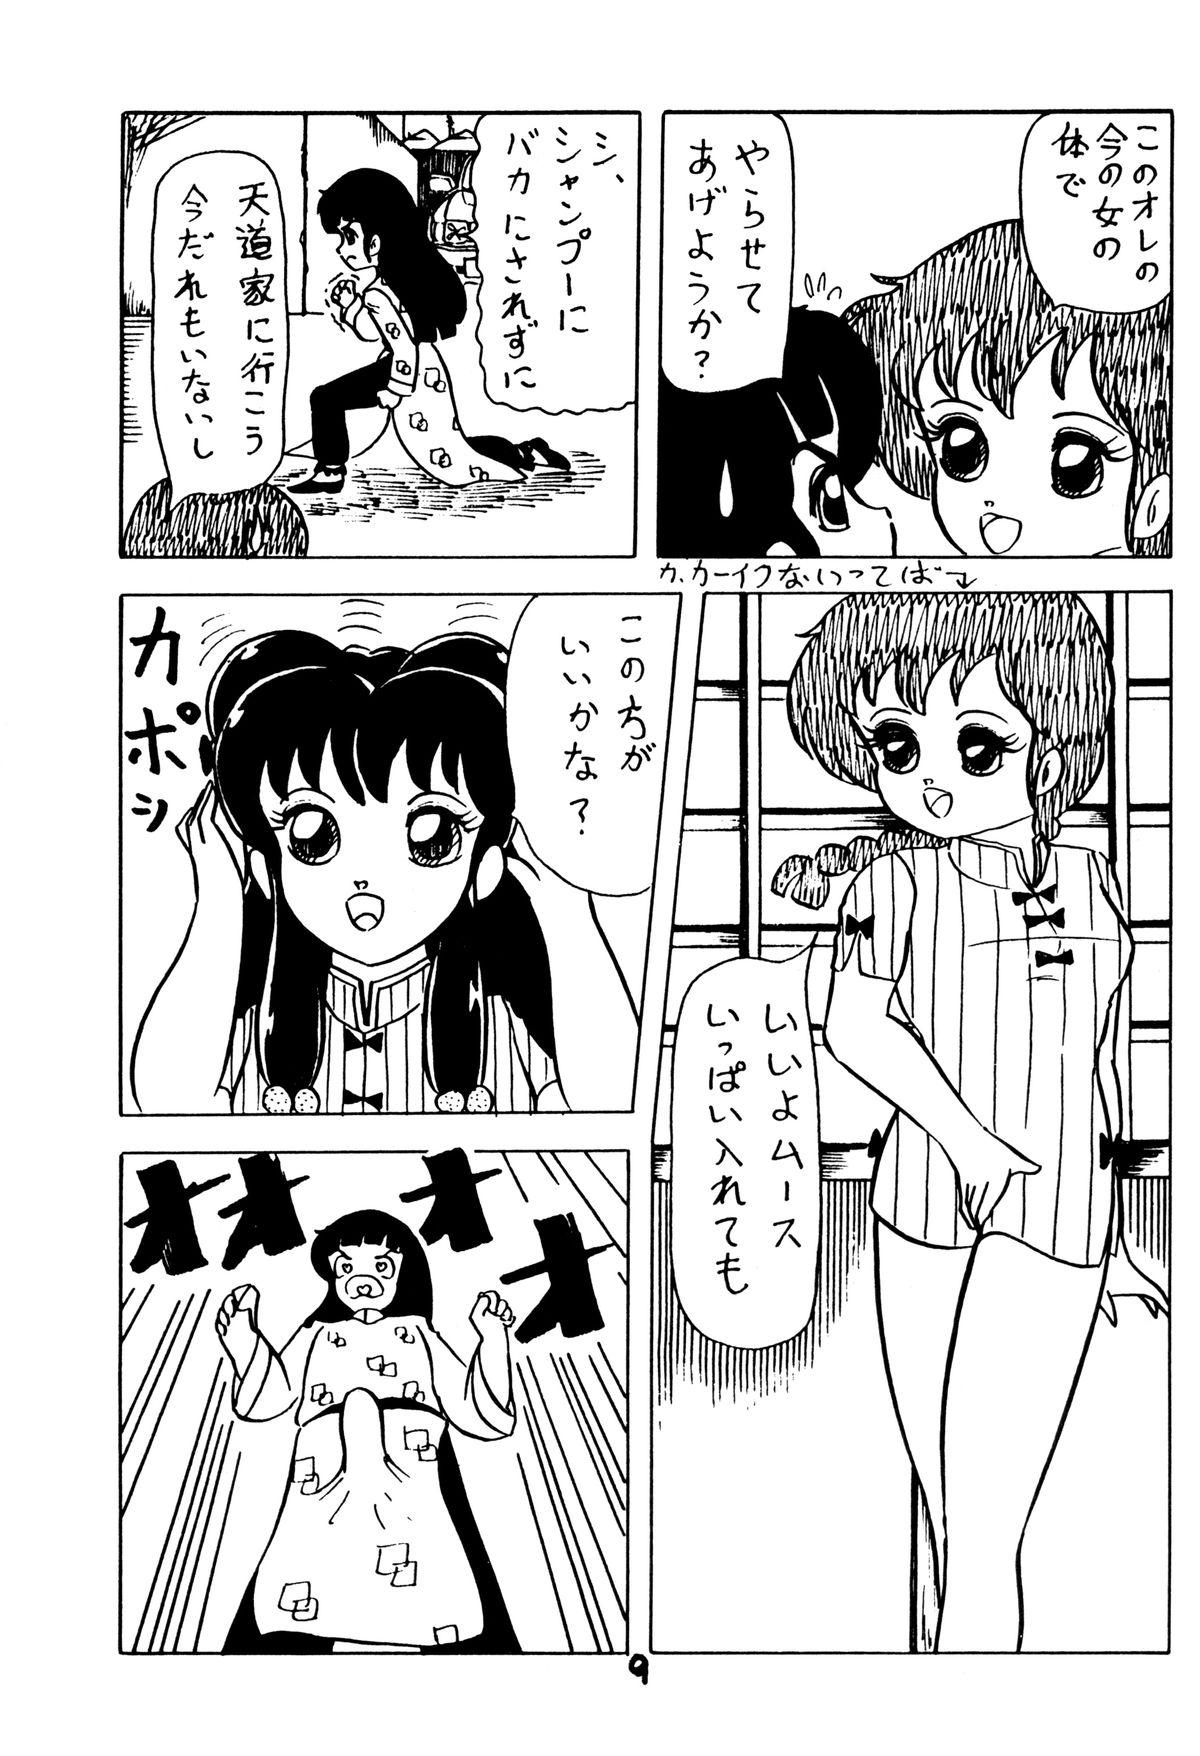 Nasty Atsui-cha 15 - Ranma 12 Urusei yatsura Sex - Page 8